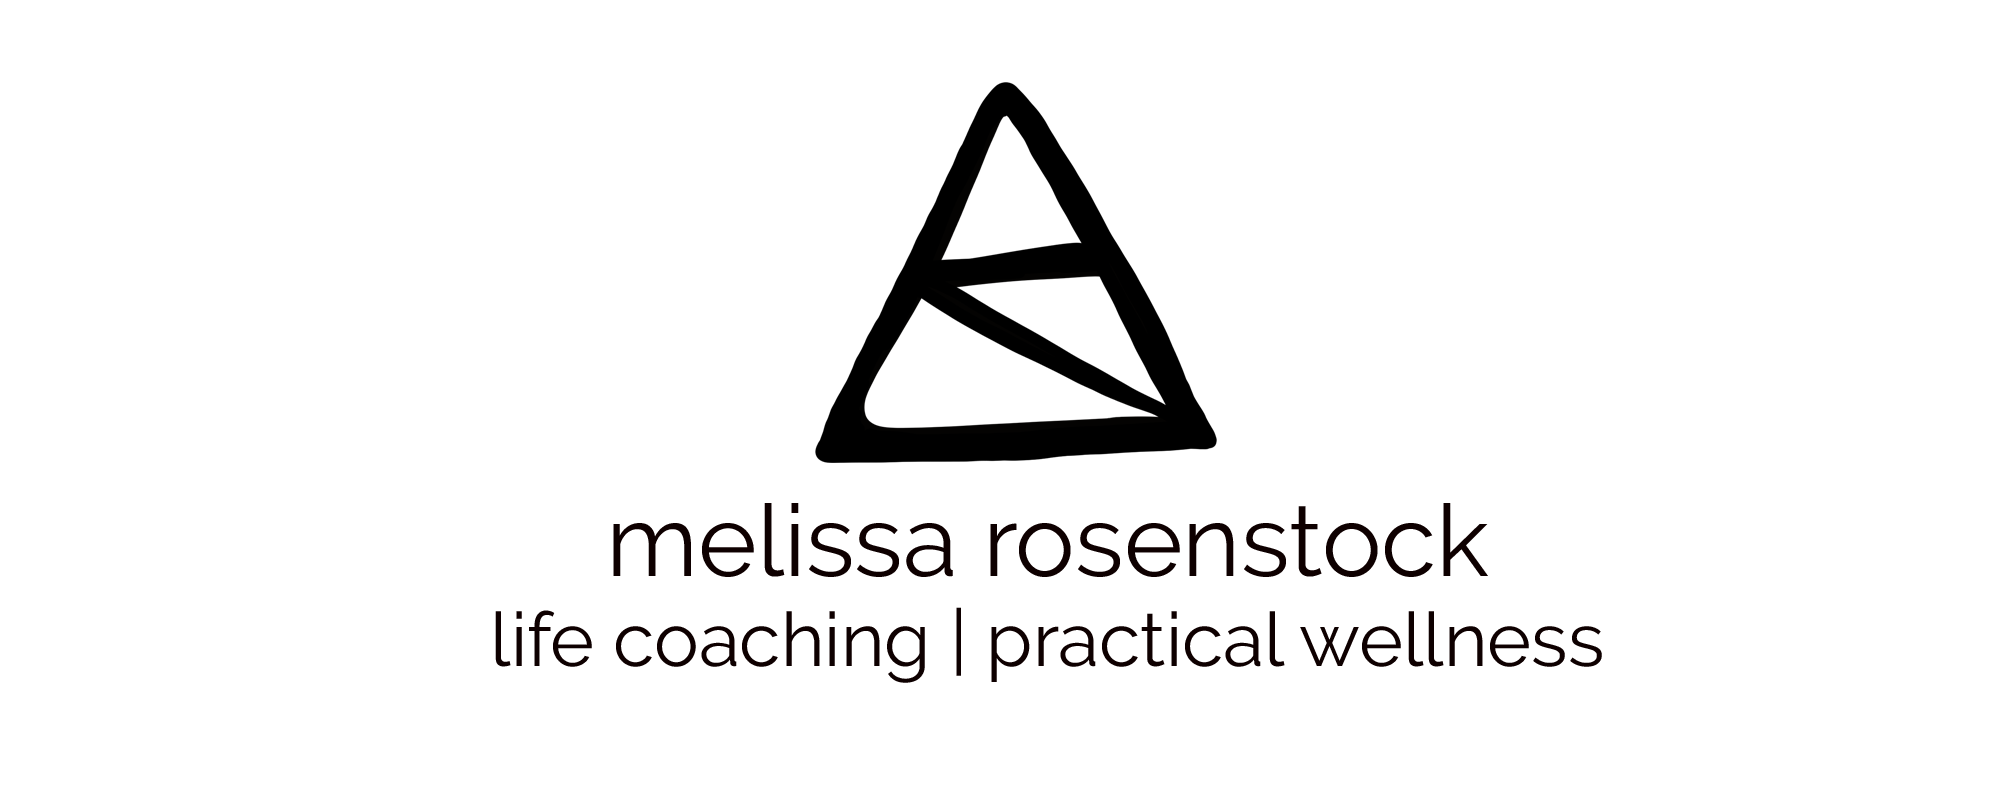 Melissa Rosenstock